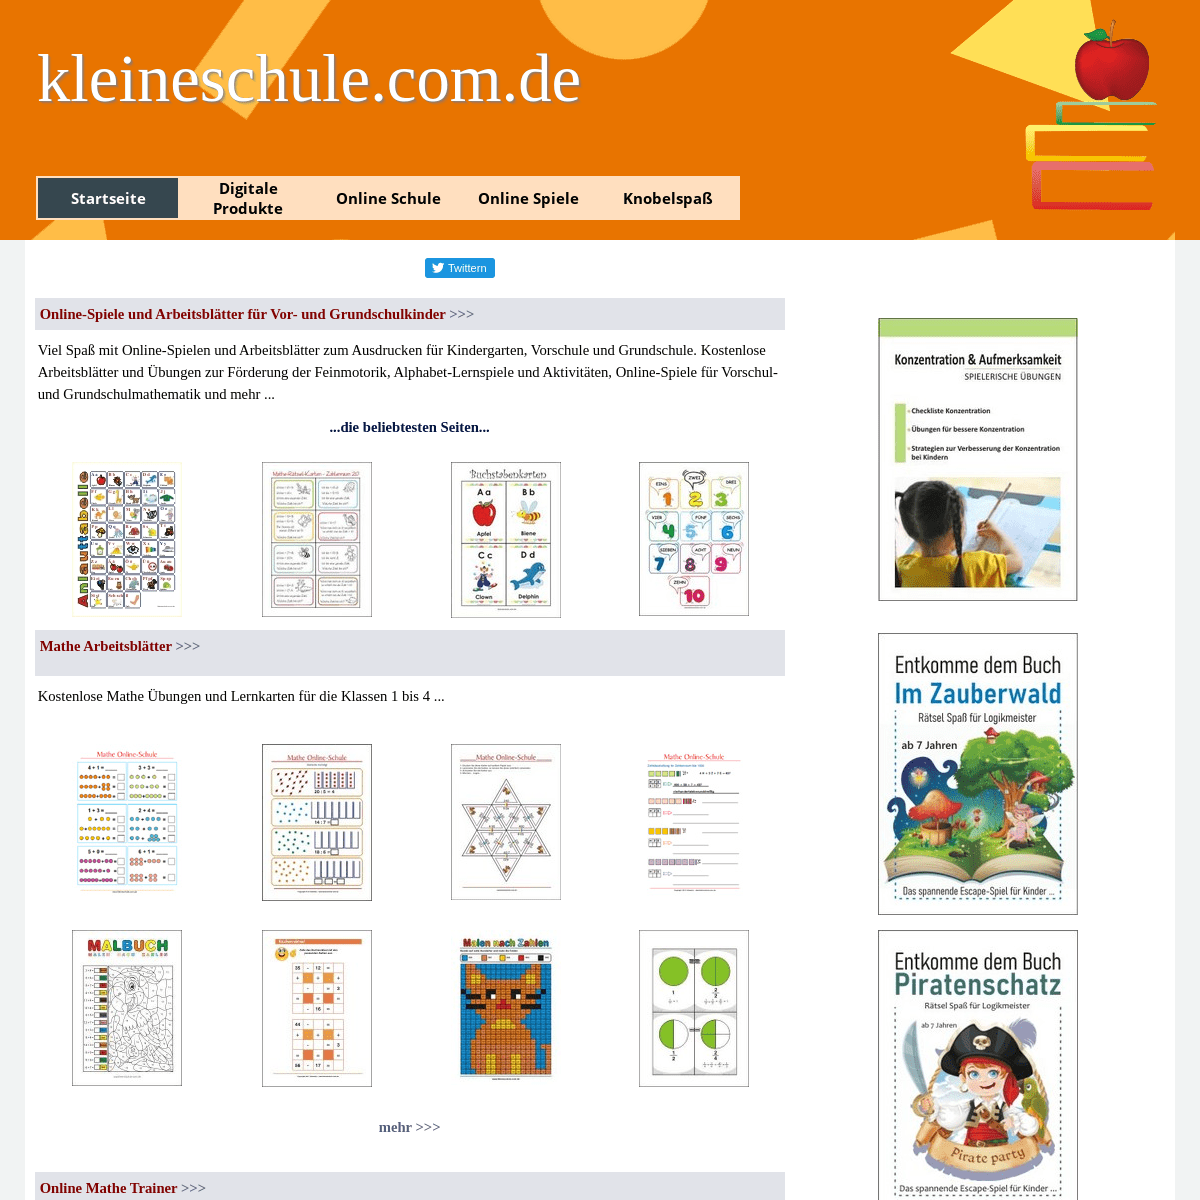 A complete backup of https://kleineschule.com.de